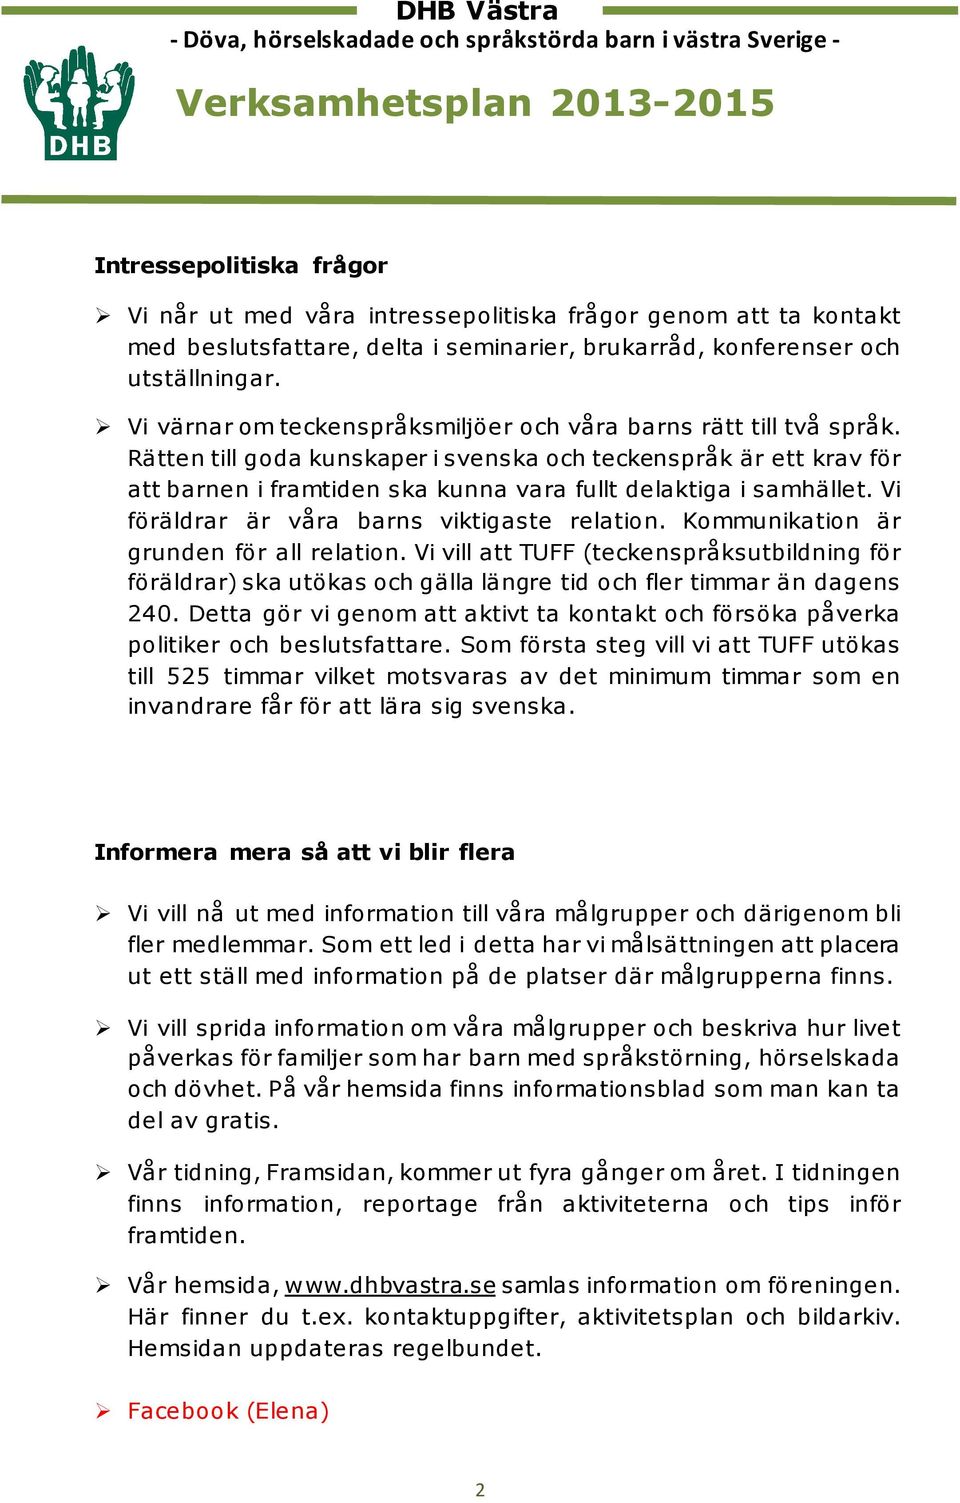 Rätten till goda kunskaper i svenska och teckenspråk är ett krav för att barnen i framtiden ska kunna vara fullt delaktiga i samhället. Vi föräldrar är våra barns viktigaste relation.